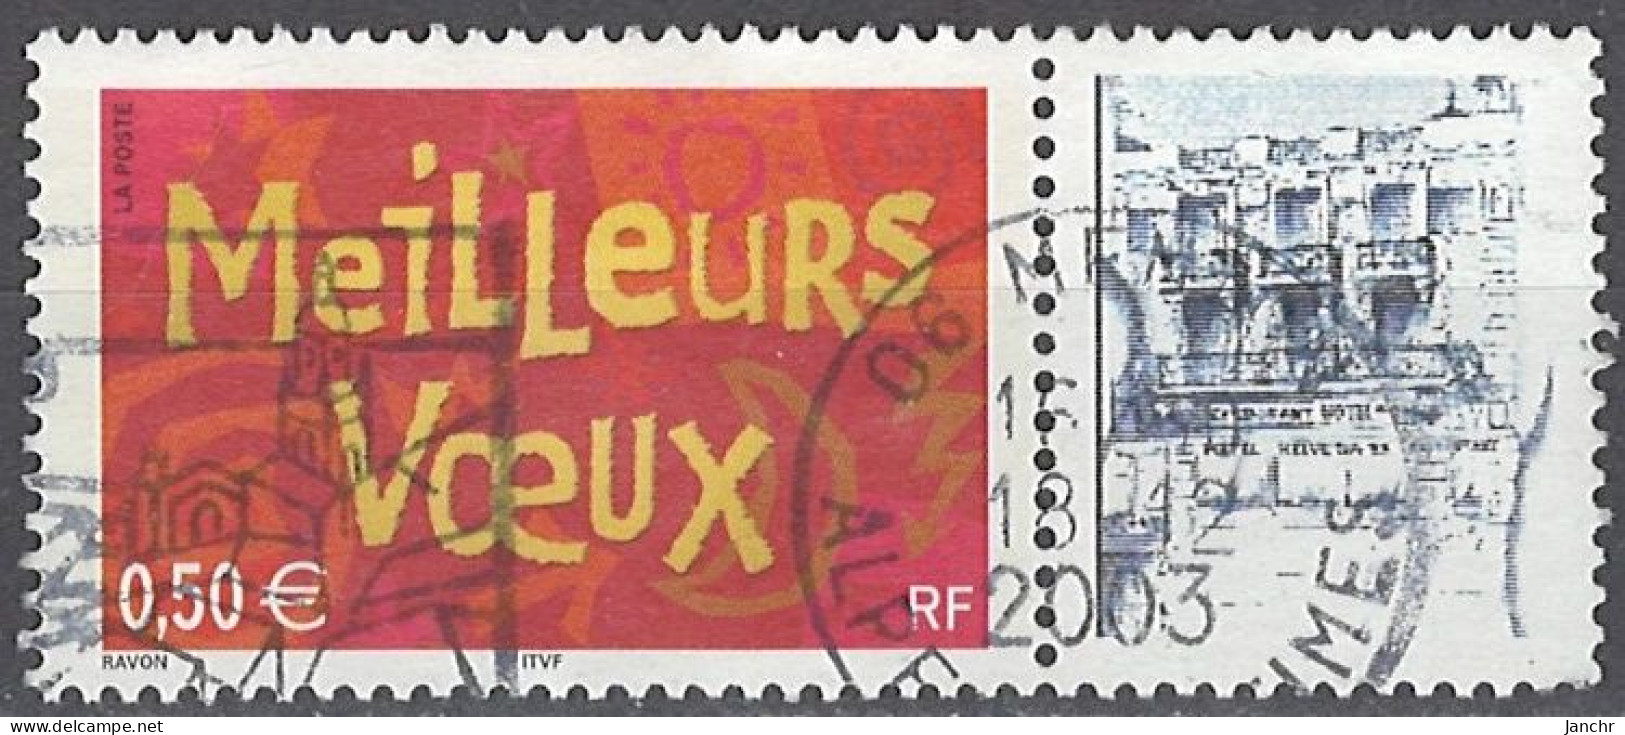 France Frankreich 2003. Mi.Nr. 3764  IIy Zf, Used O - Usados